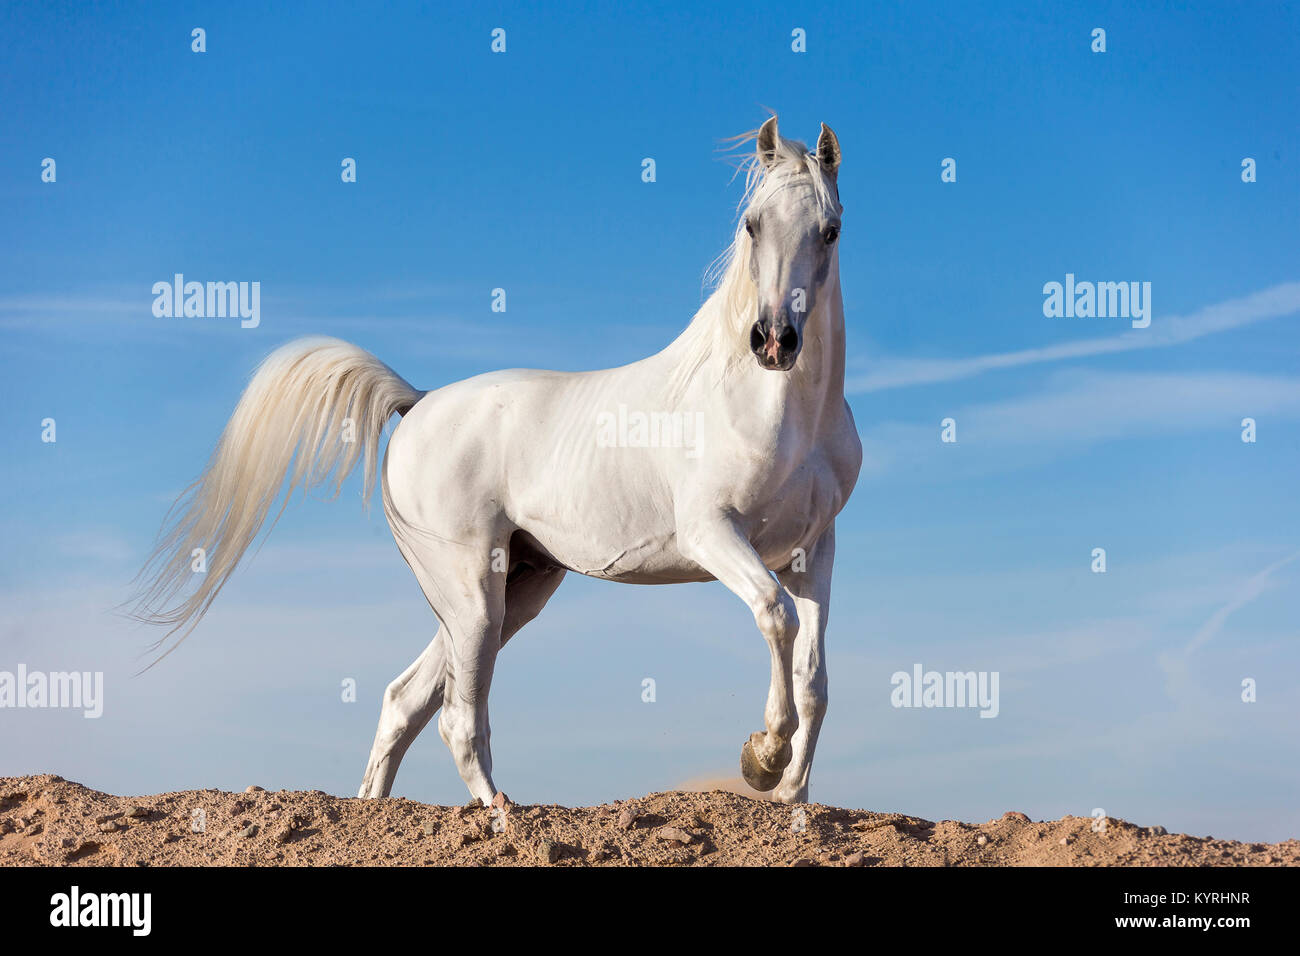 Arabian Horse. Stallone grigio a camminare su una duna. L'Egitto. Foto Stock